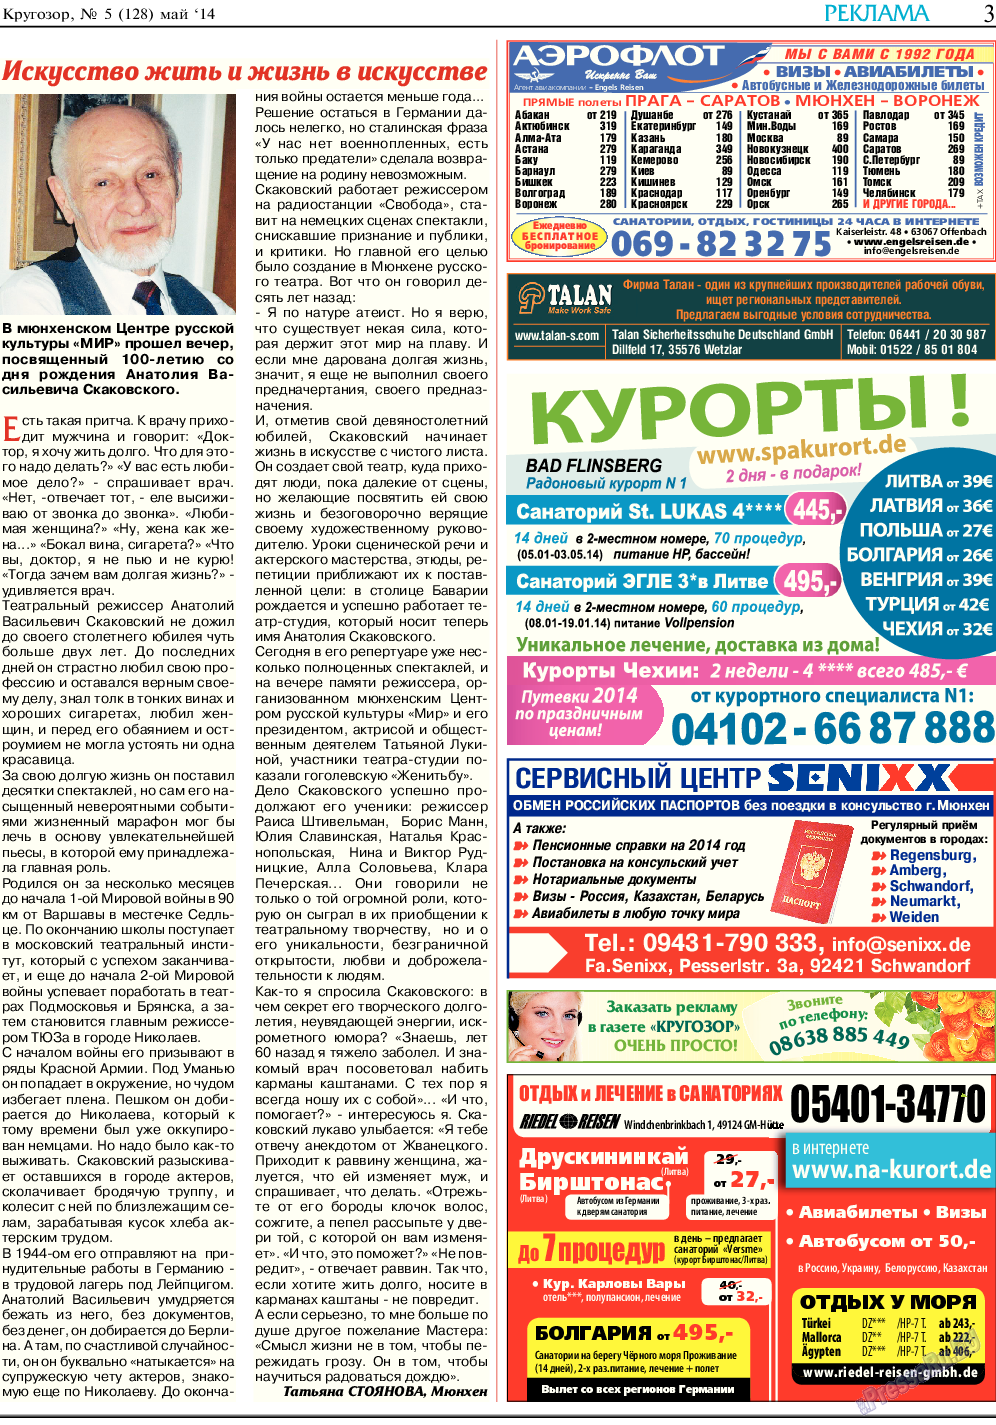 Кругозор (газета). 2014 год, номер 5, стр. 3